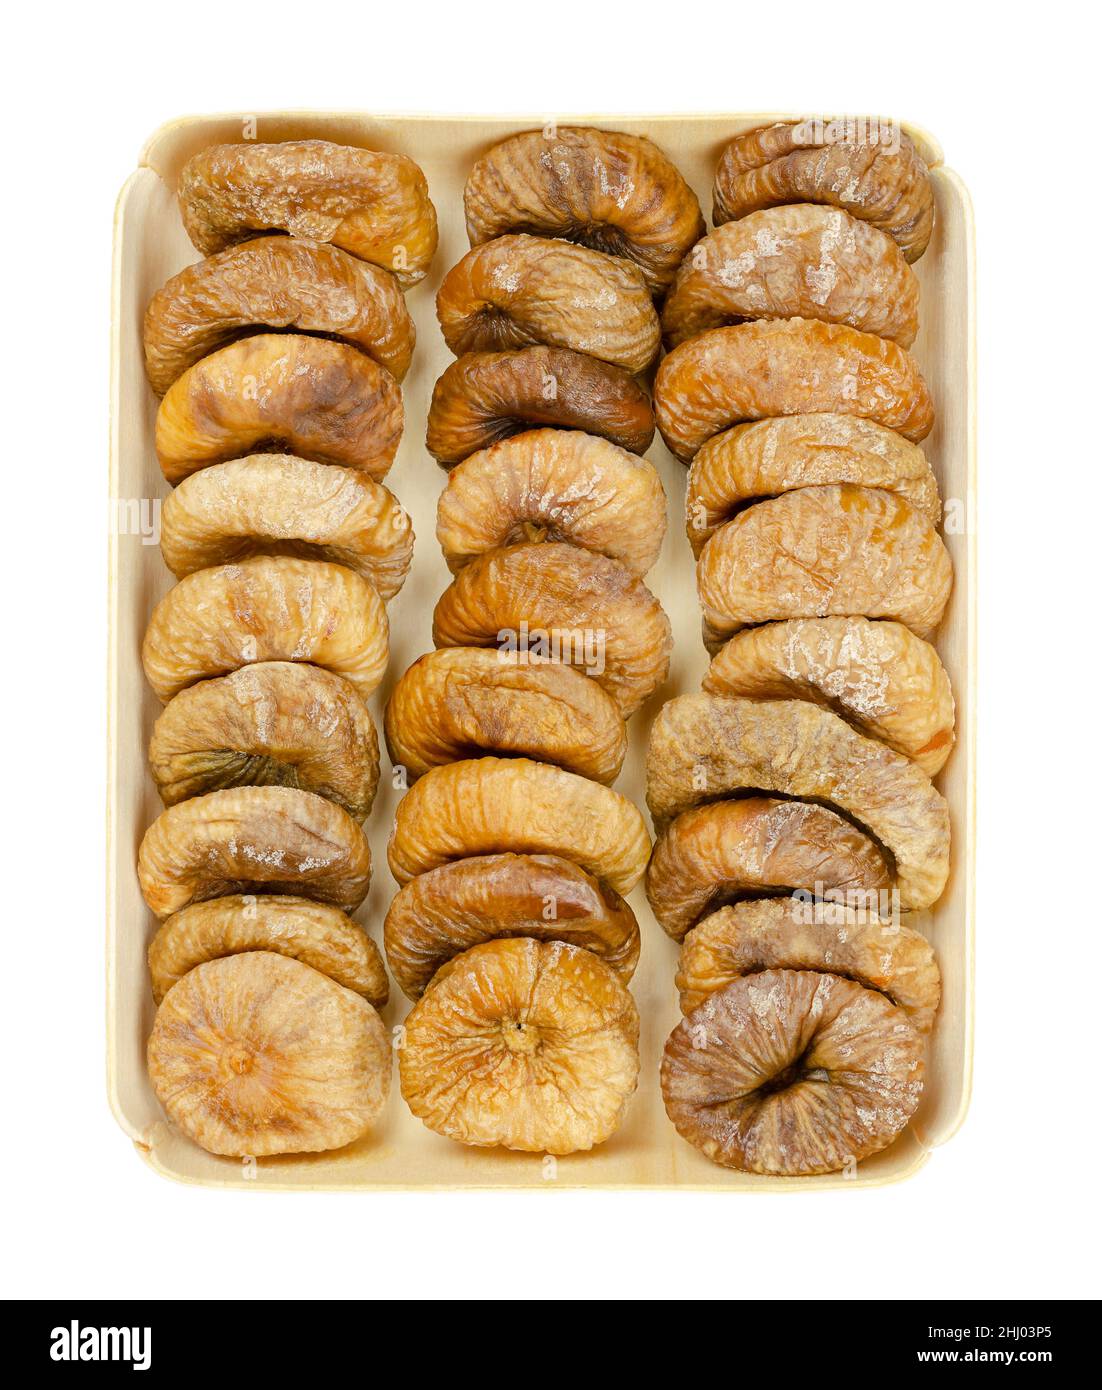 Sonnengetrocknete Feigen, in einem Holztablett drei Reihen getrockneter, reifer und ganzer gemeiner Feigen, ungekochte Früchte von Ficus carica, ein beliebter Snack im Winter. Stockfoto